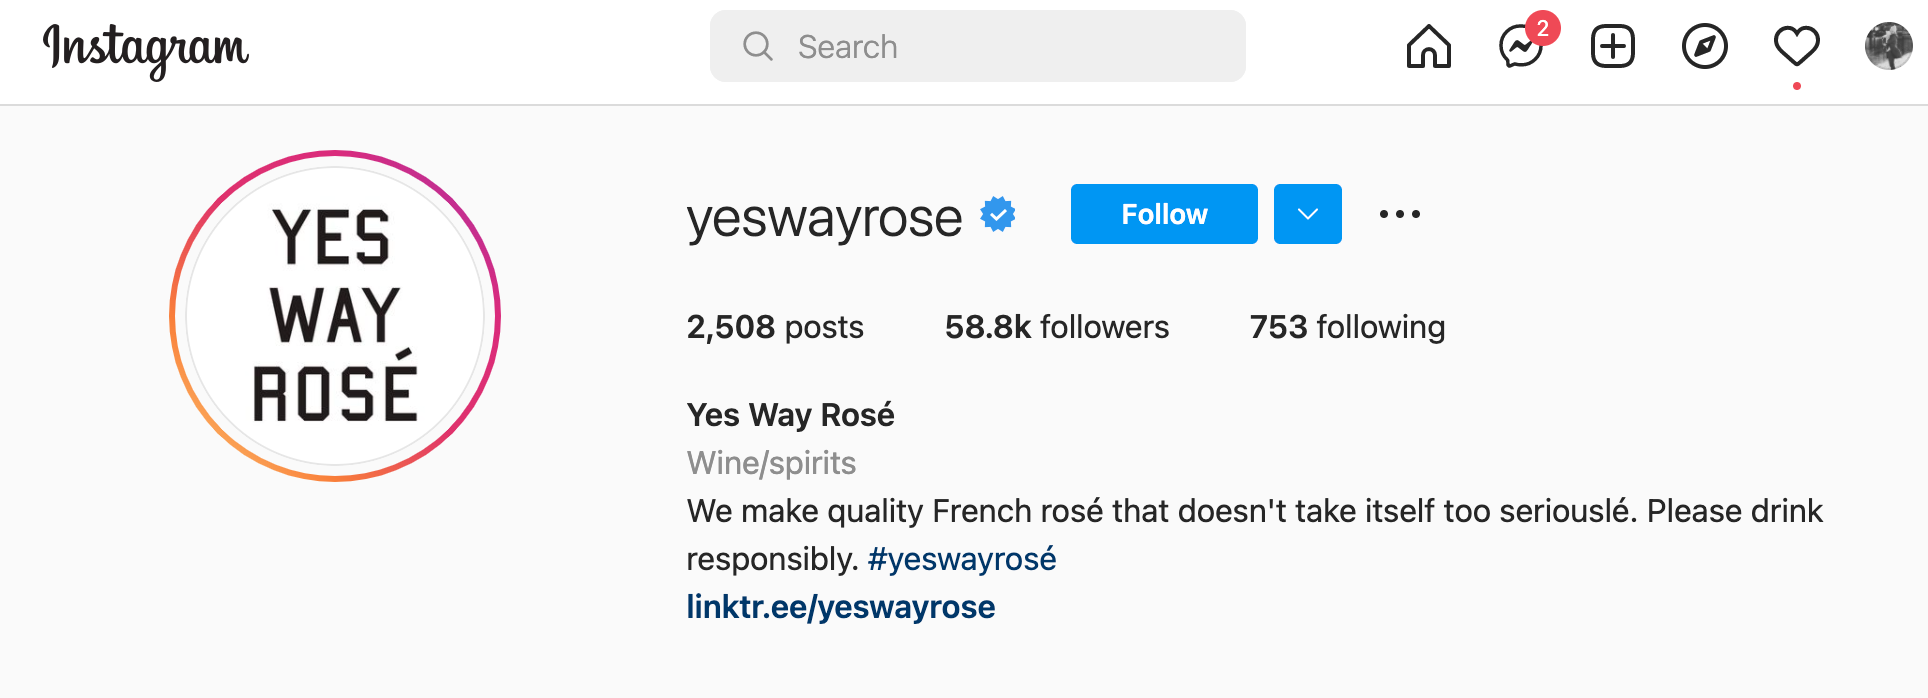 Yes way rose